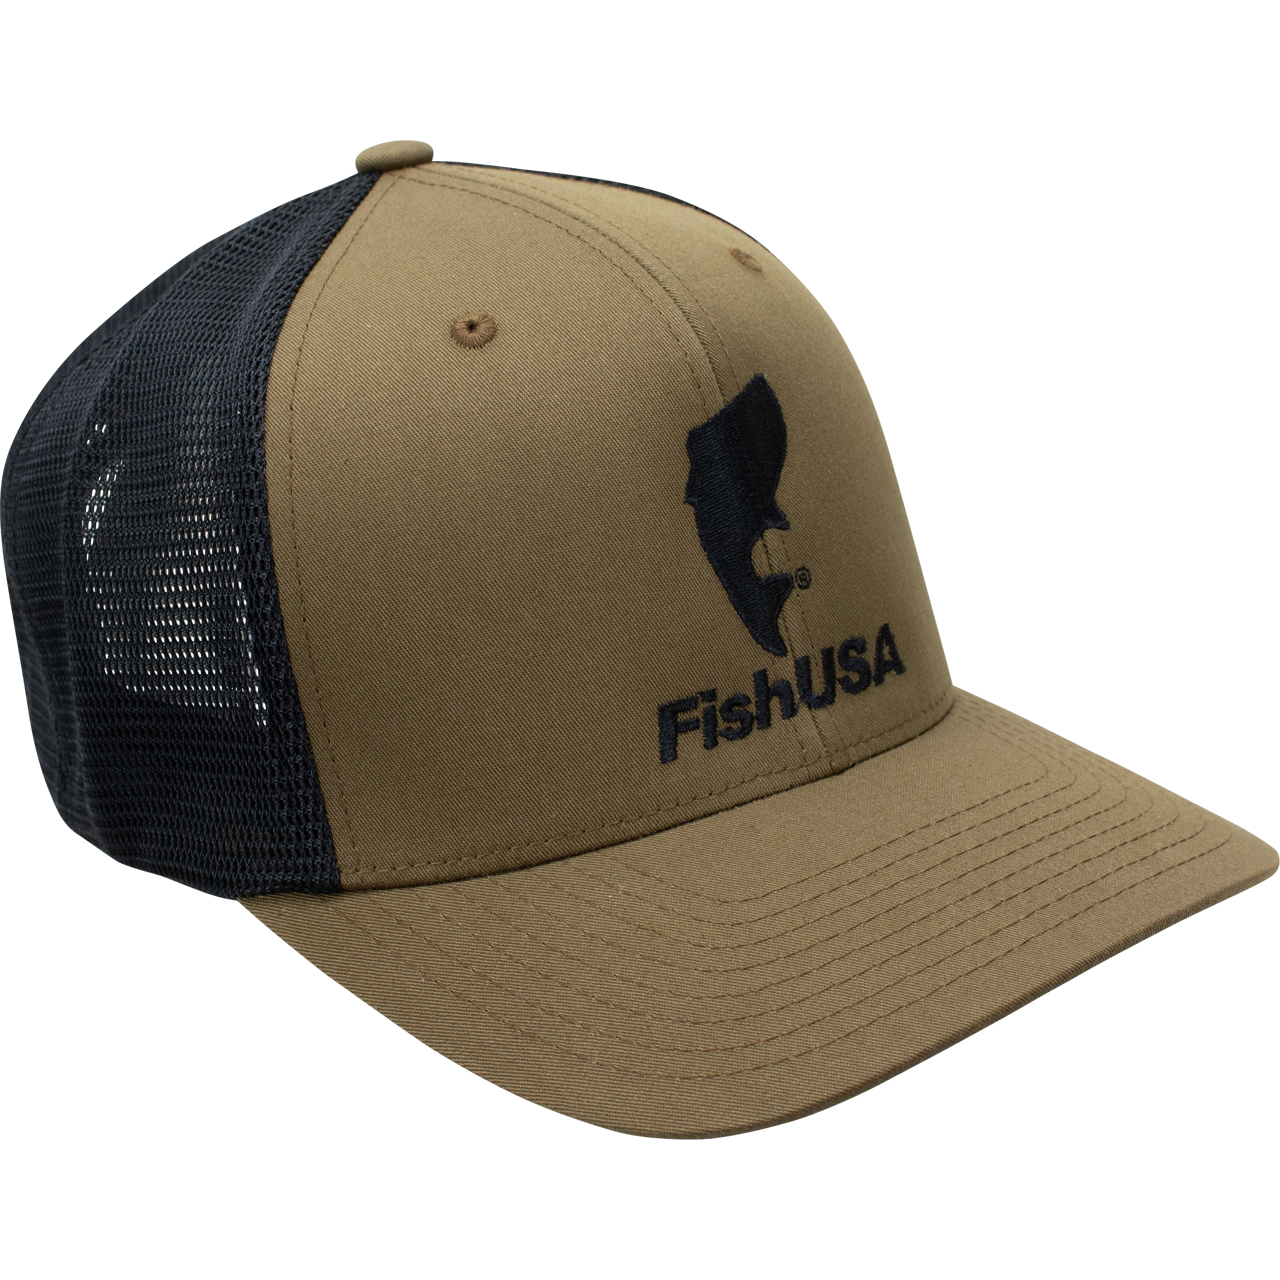 FishUSA Flexfit Trucker Hat